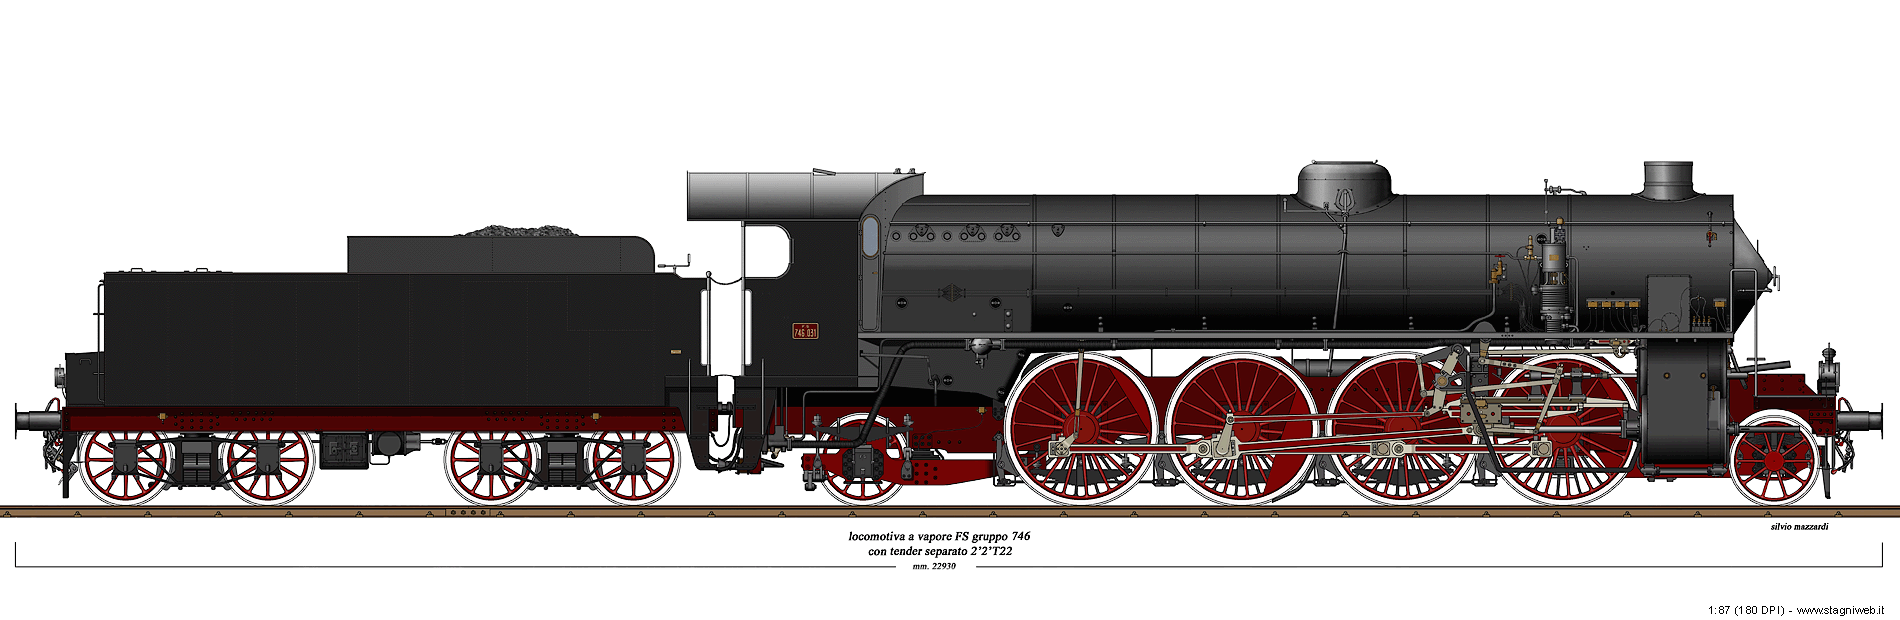 Locomotive a vapore - Gr. 746 Walschaerts